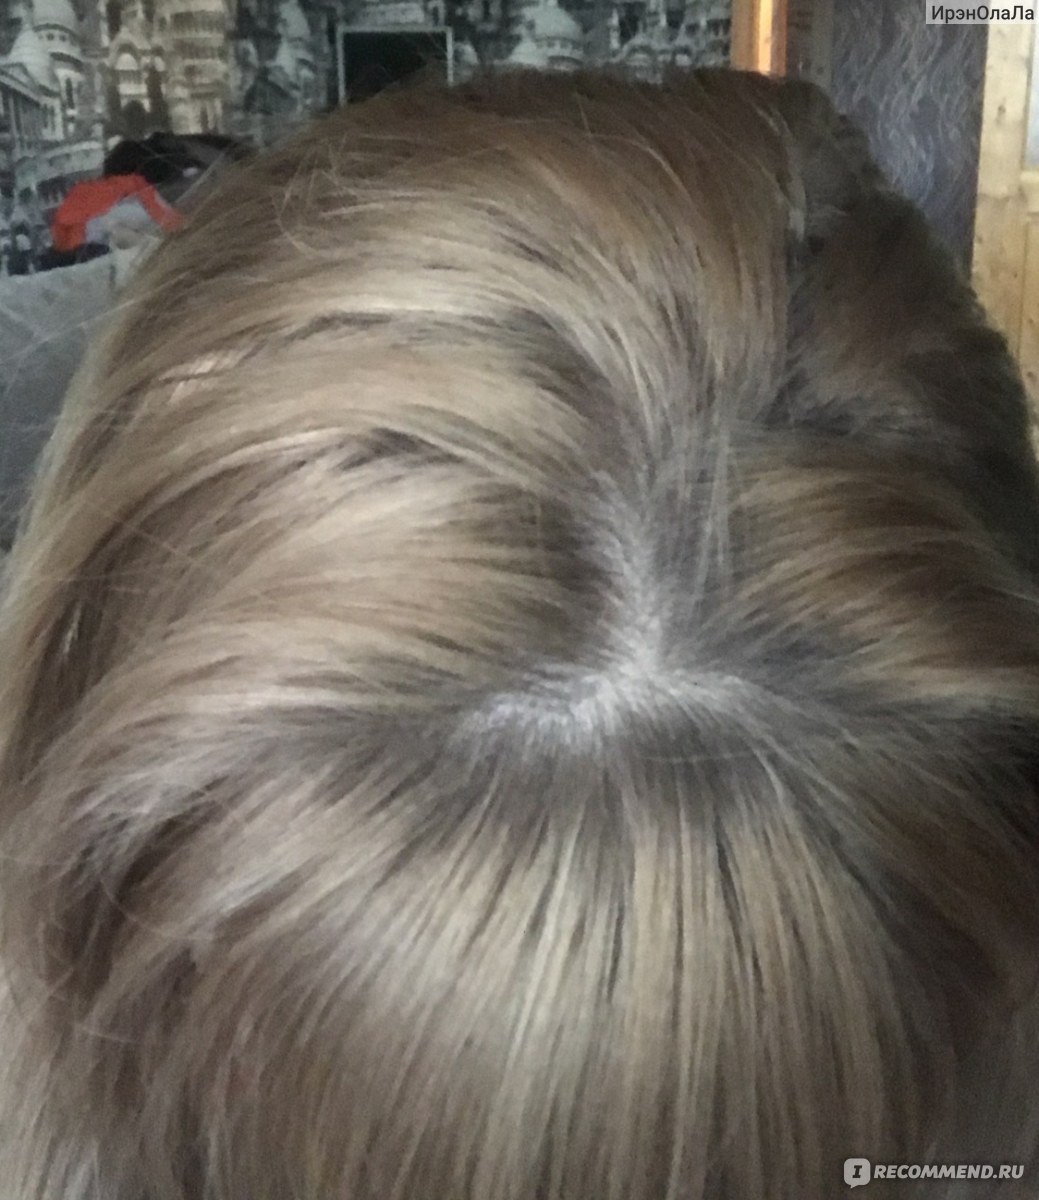 краска эстель 9.16 фото на волосах